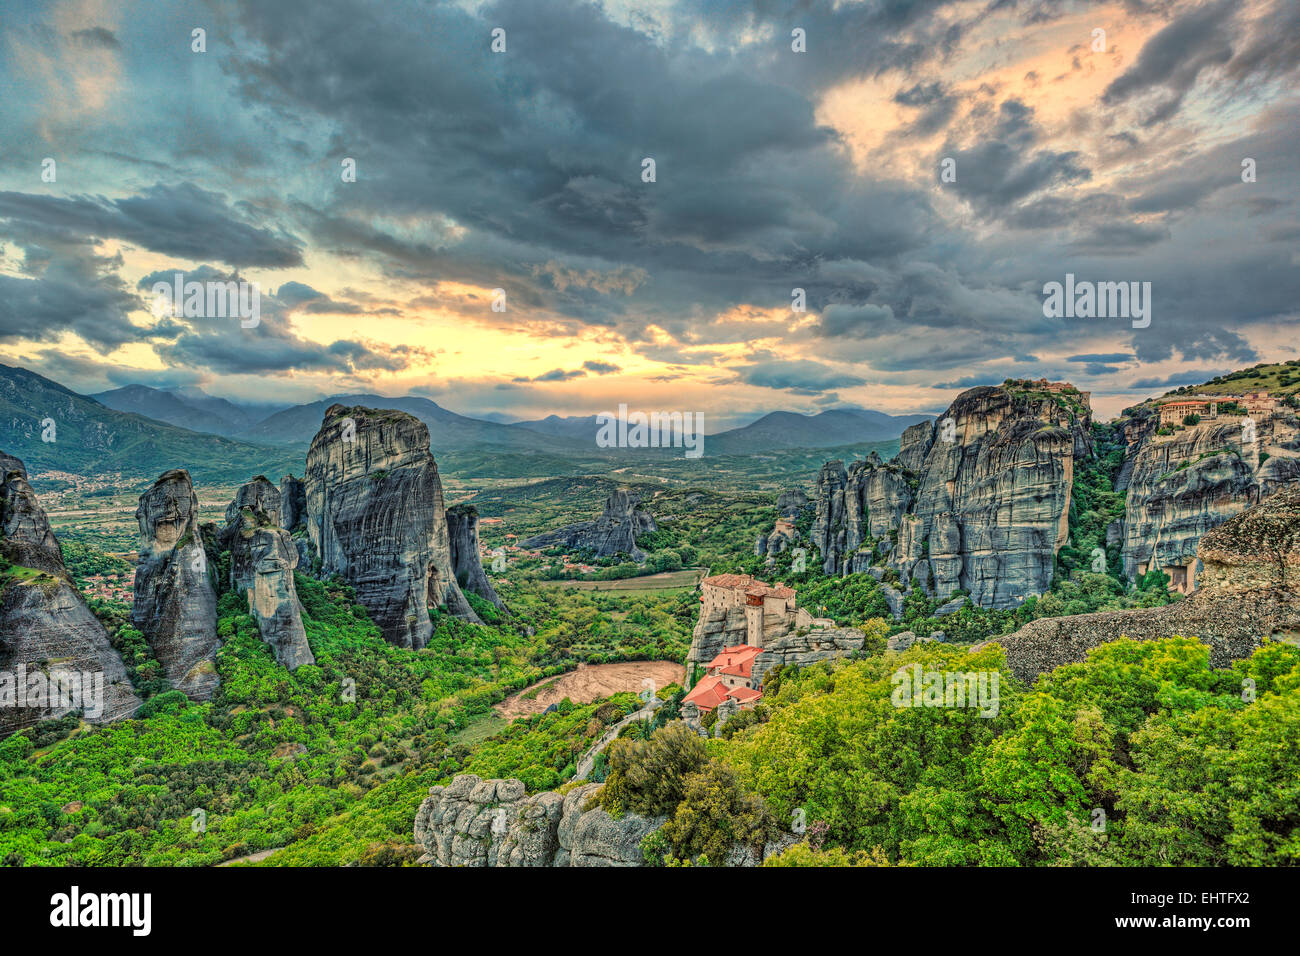 Monastères au sommet de rochers géants semblent miraculeux et les Météores font l'un des endroits les plus spectaculaires de la Grèce. Banque D'Images